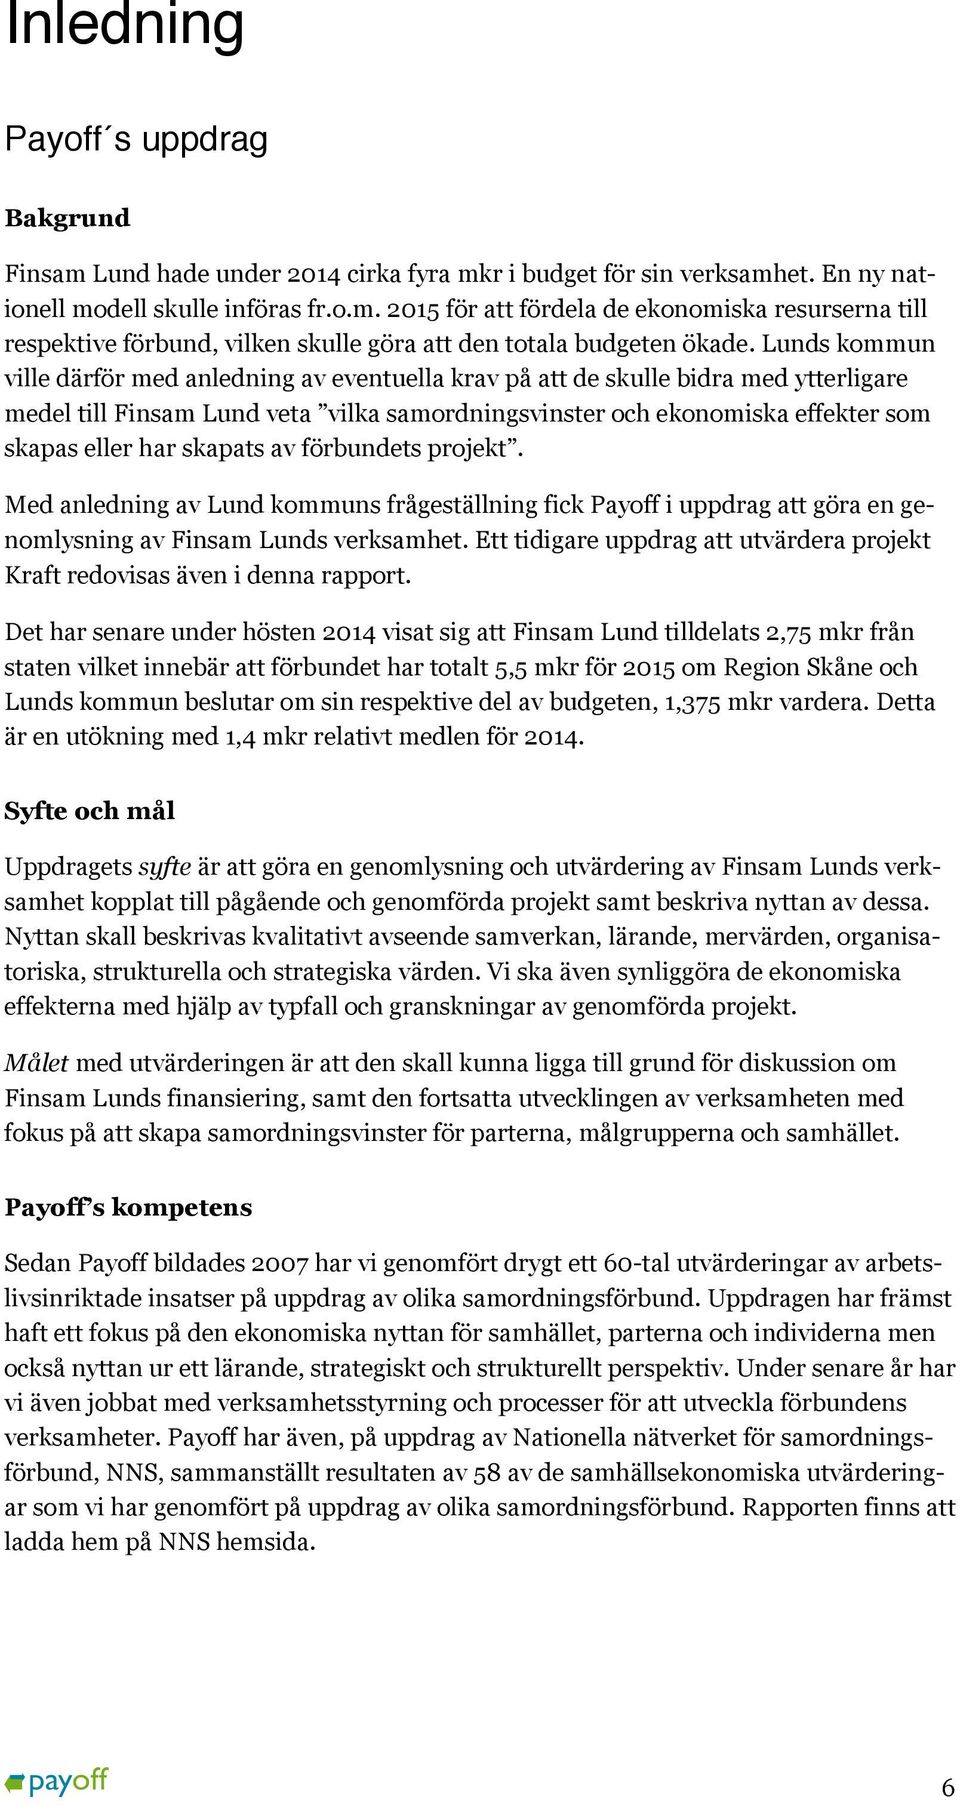 skapats av förbundets projekt. Med anledning av Lund kommuns frågeställning fick Payoff i uppdrag att göra en genomlysning av Finsam Lunds verksamhet.